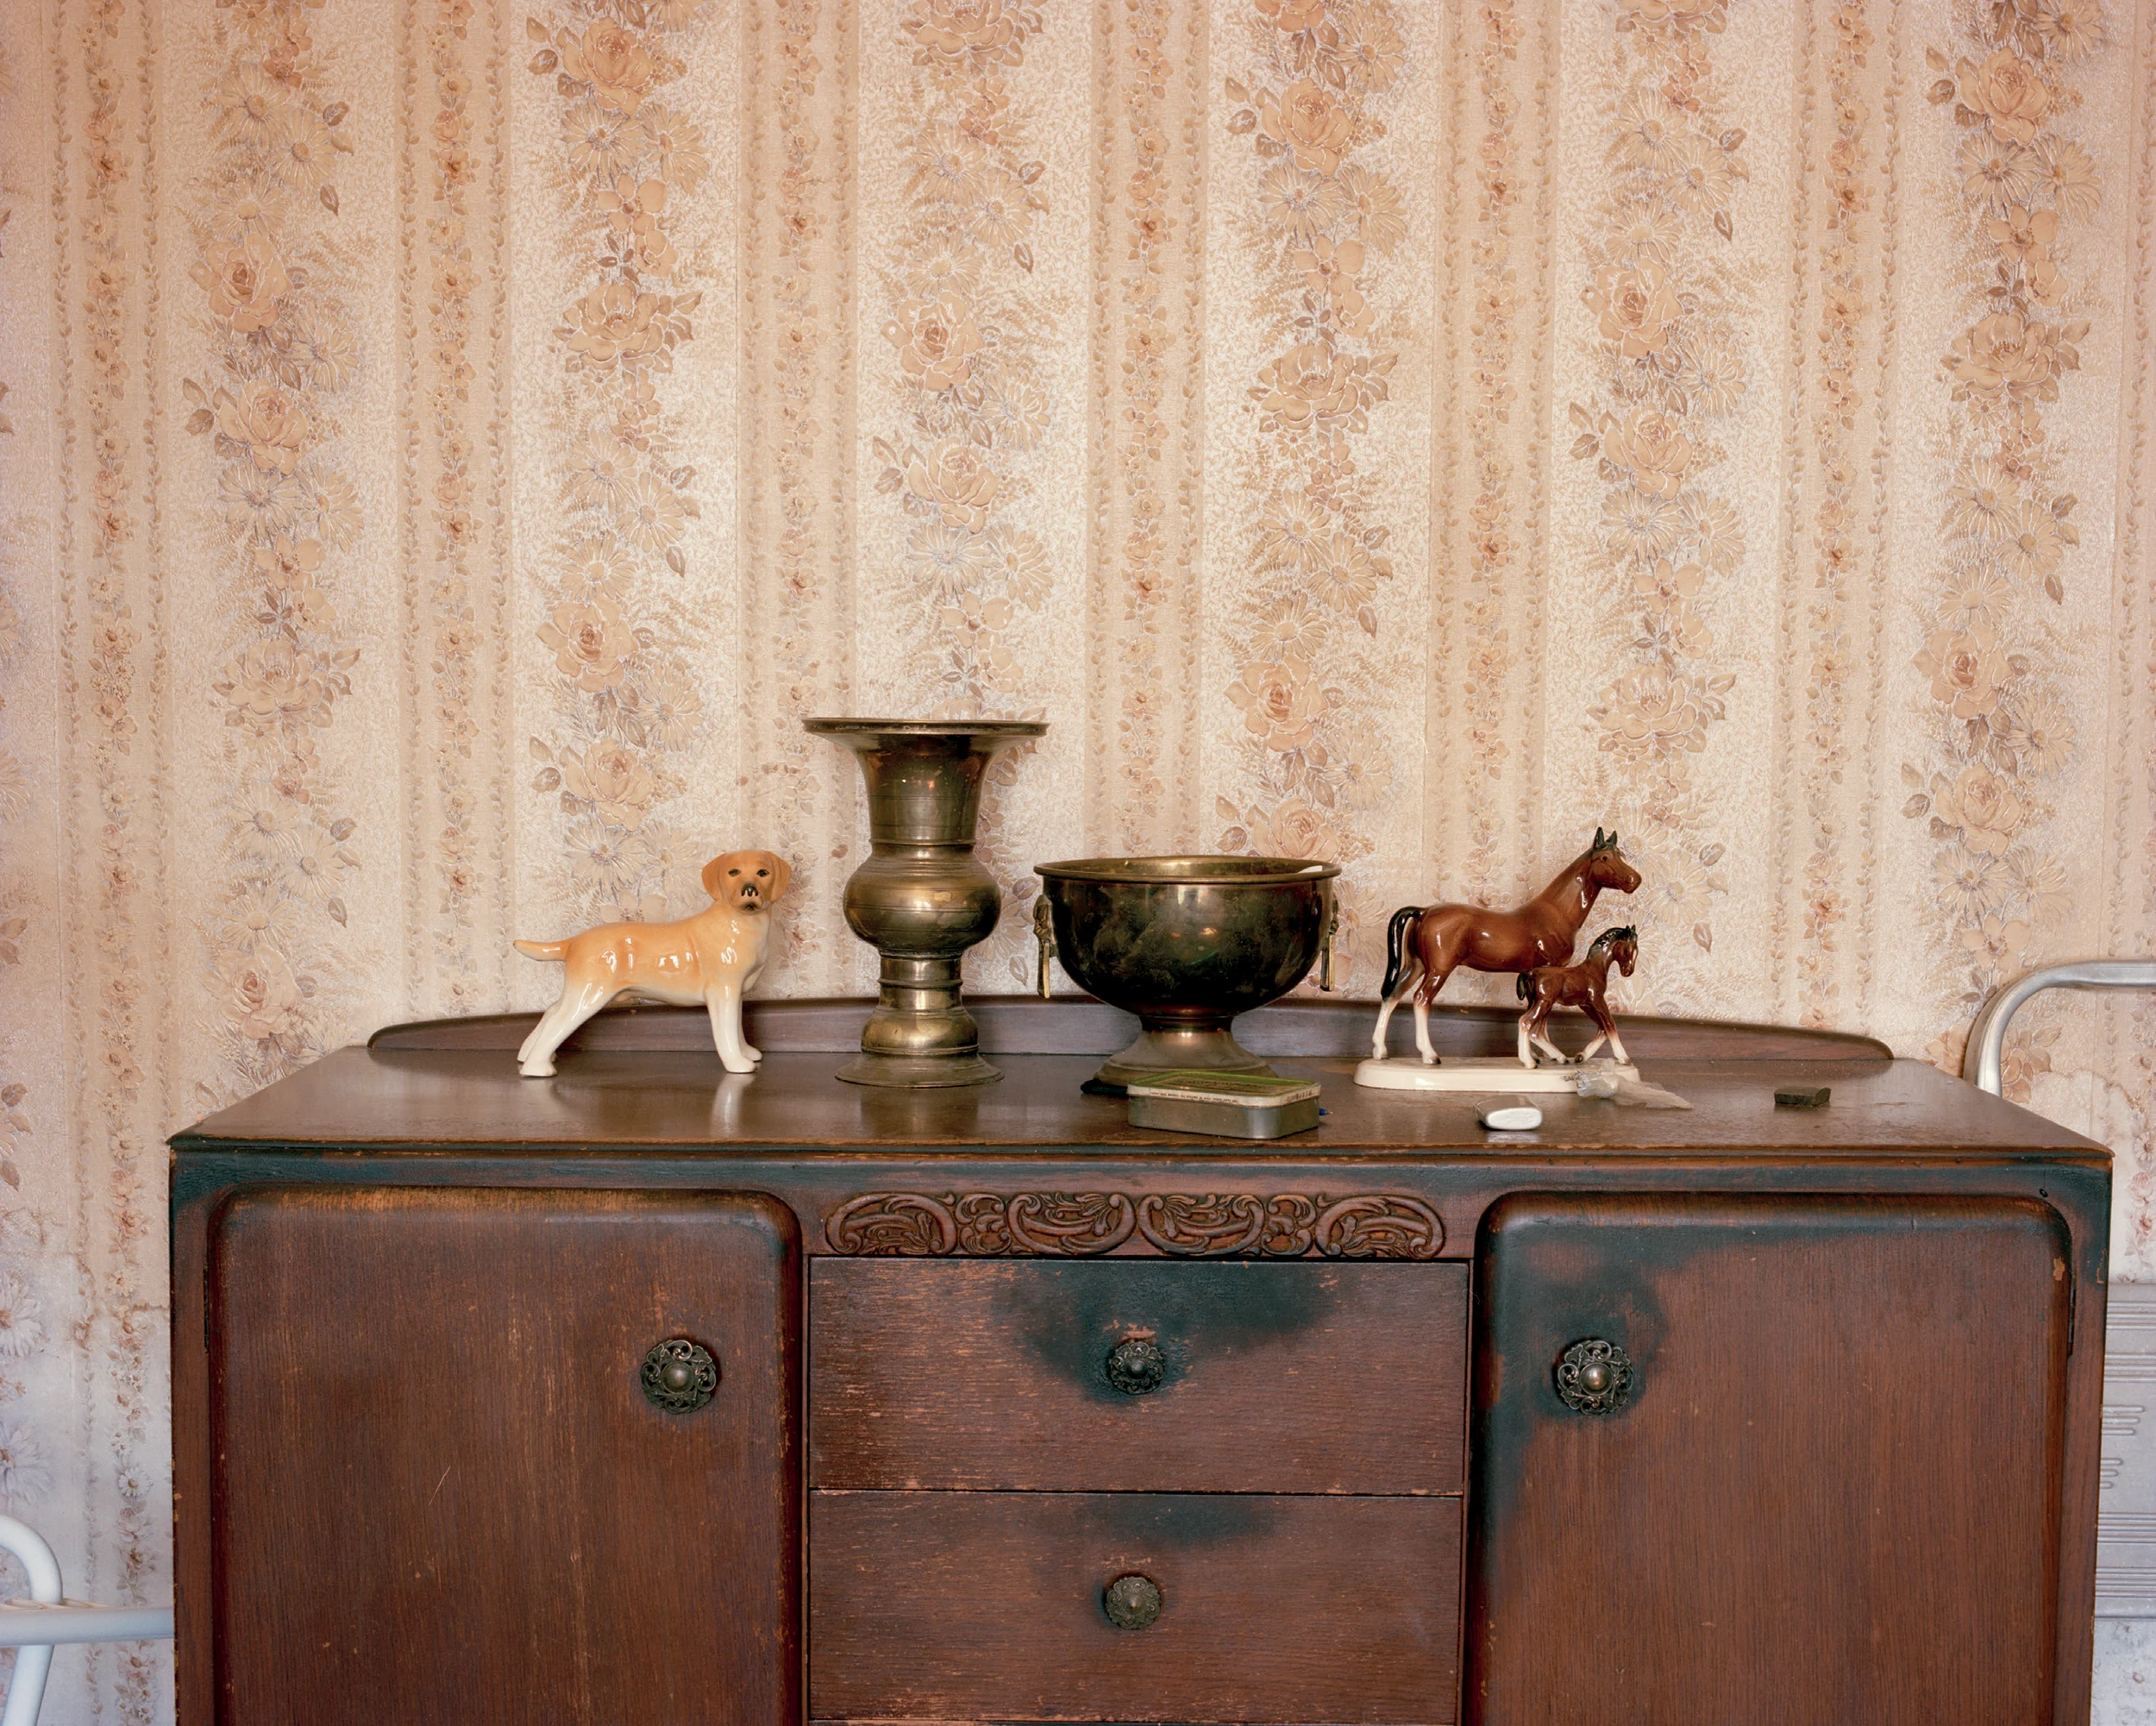 Fotografía de Laura Blight de un interior doméstico con dos estatuas de animales.